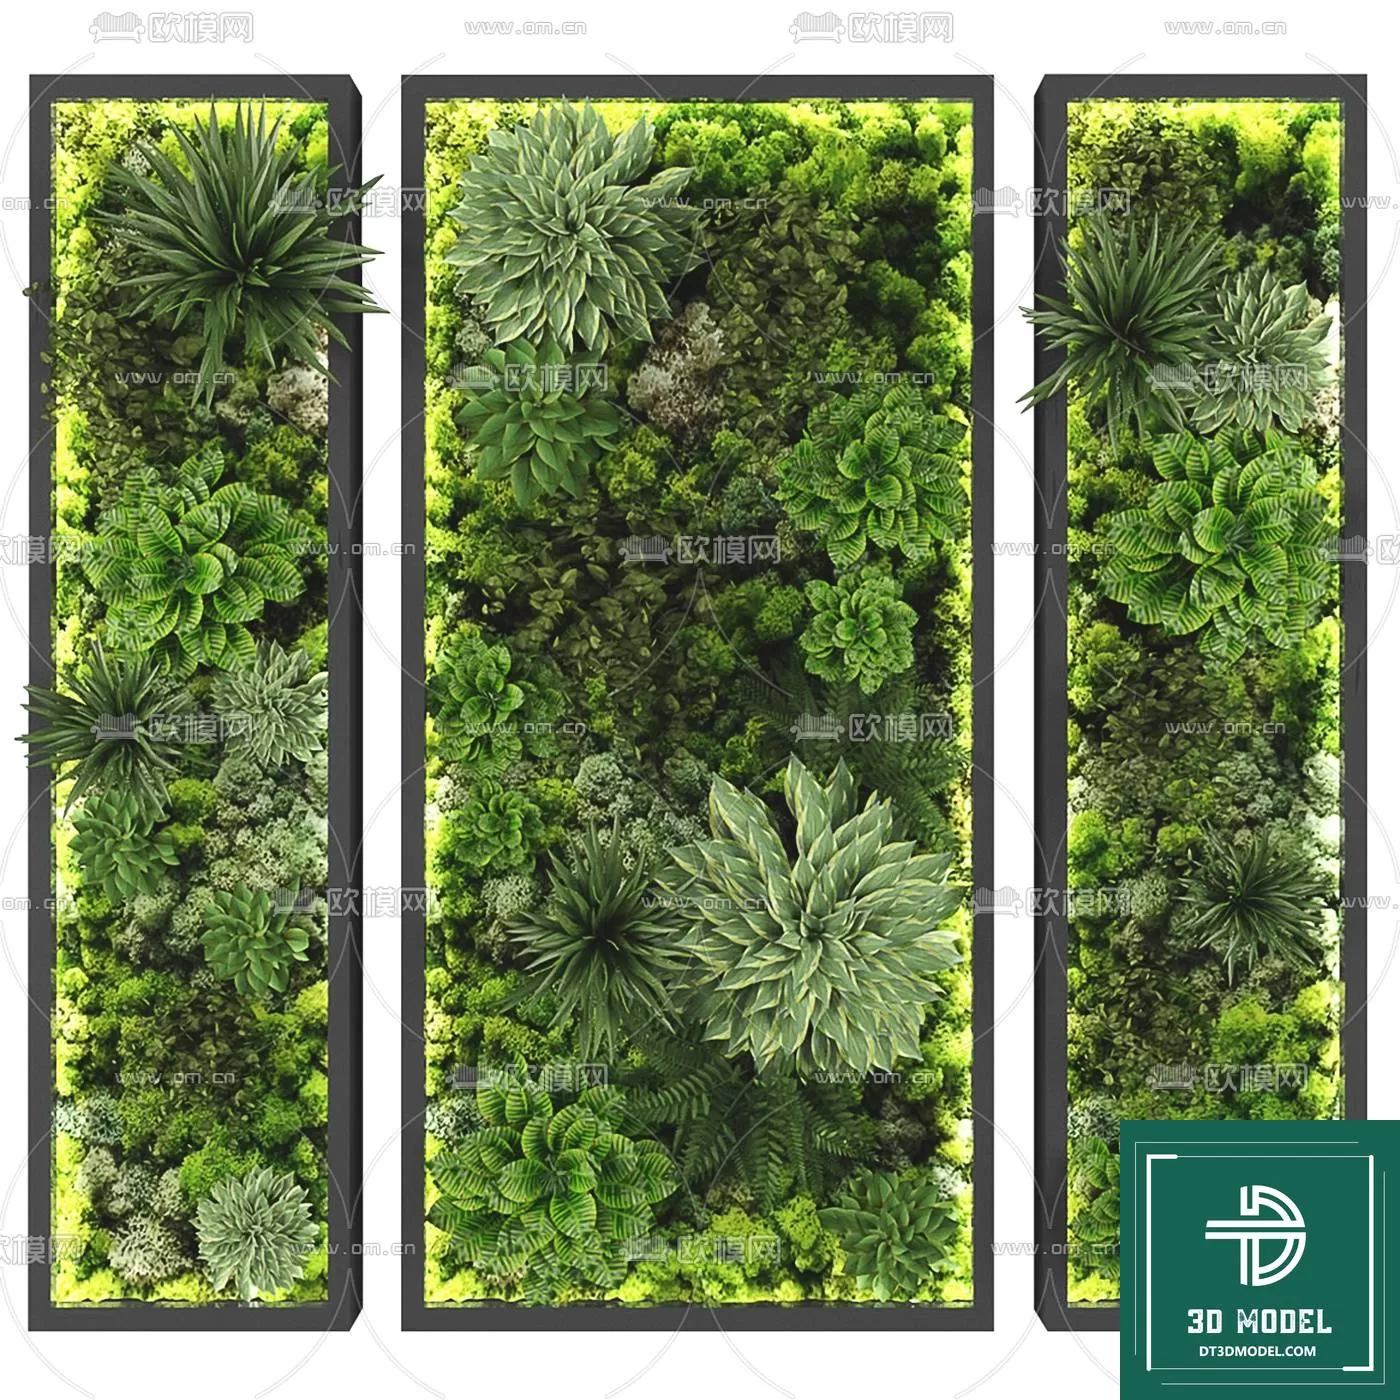 VERTICAL GARDEN – FITOWALL PLANT 3D MODEL – 022